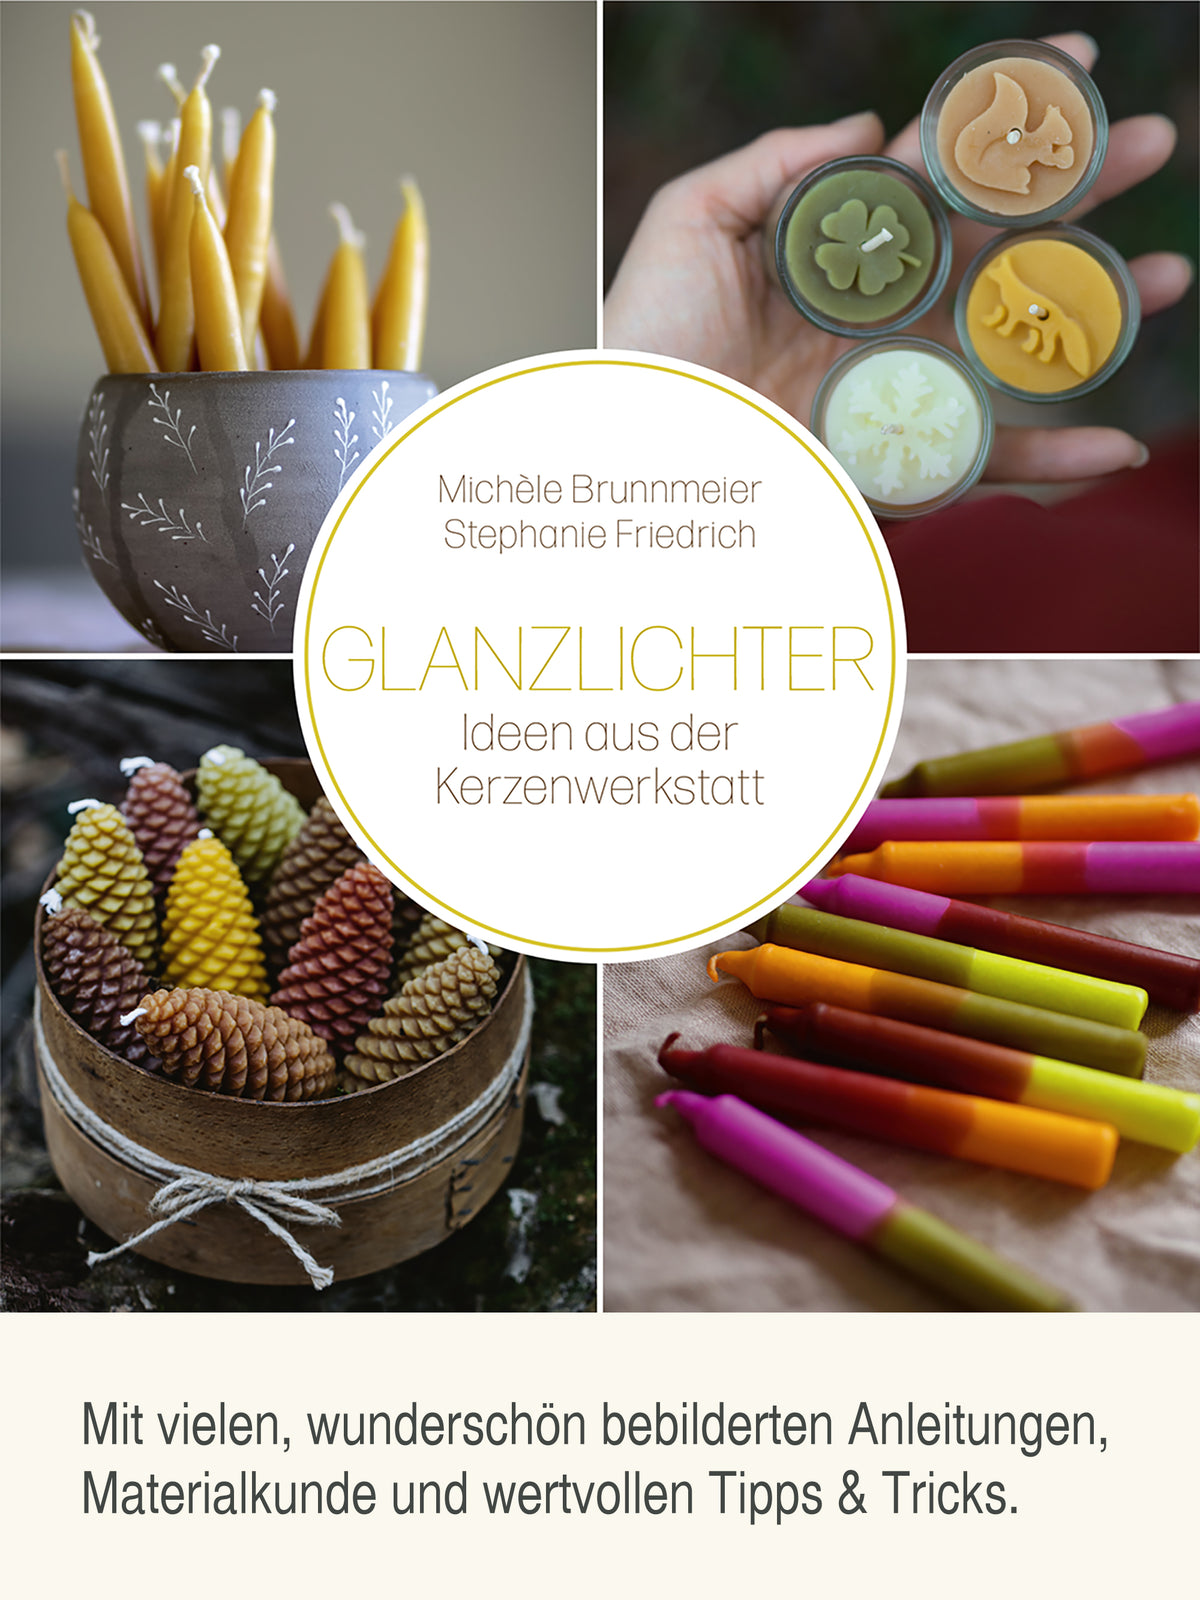 Glanzlichter - Ideen aus der Kerzenwerkstatt von Michèle Brunnmeier & Stephanie Friedrich, gebundenes Buch